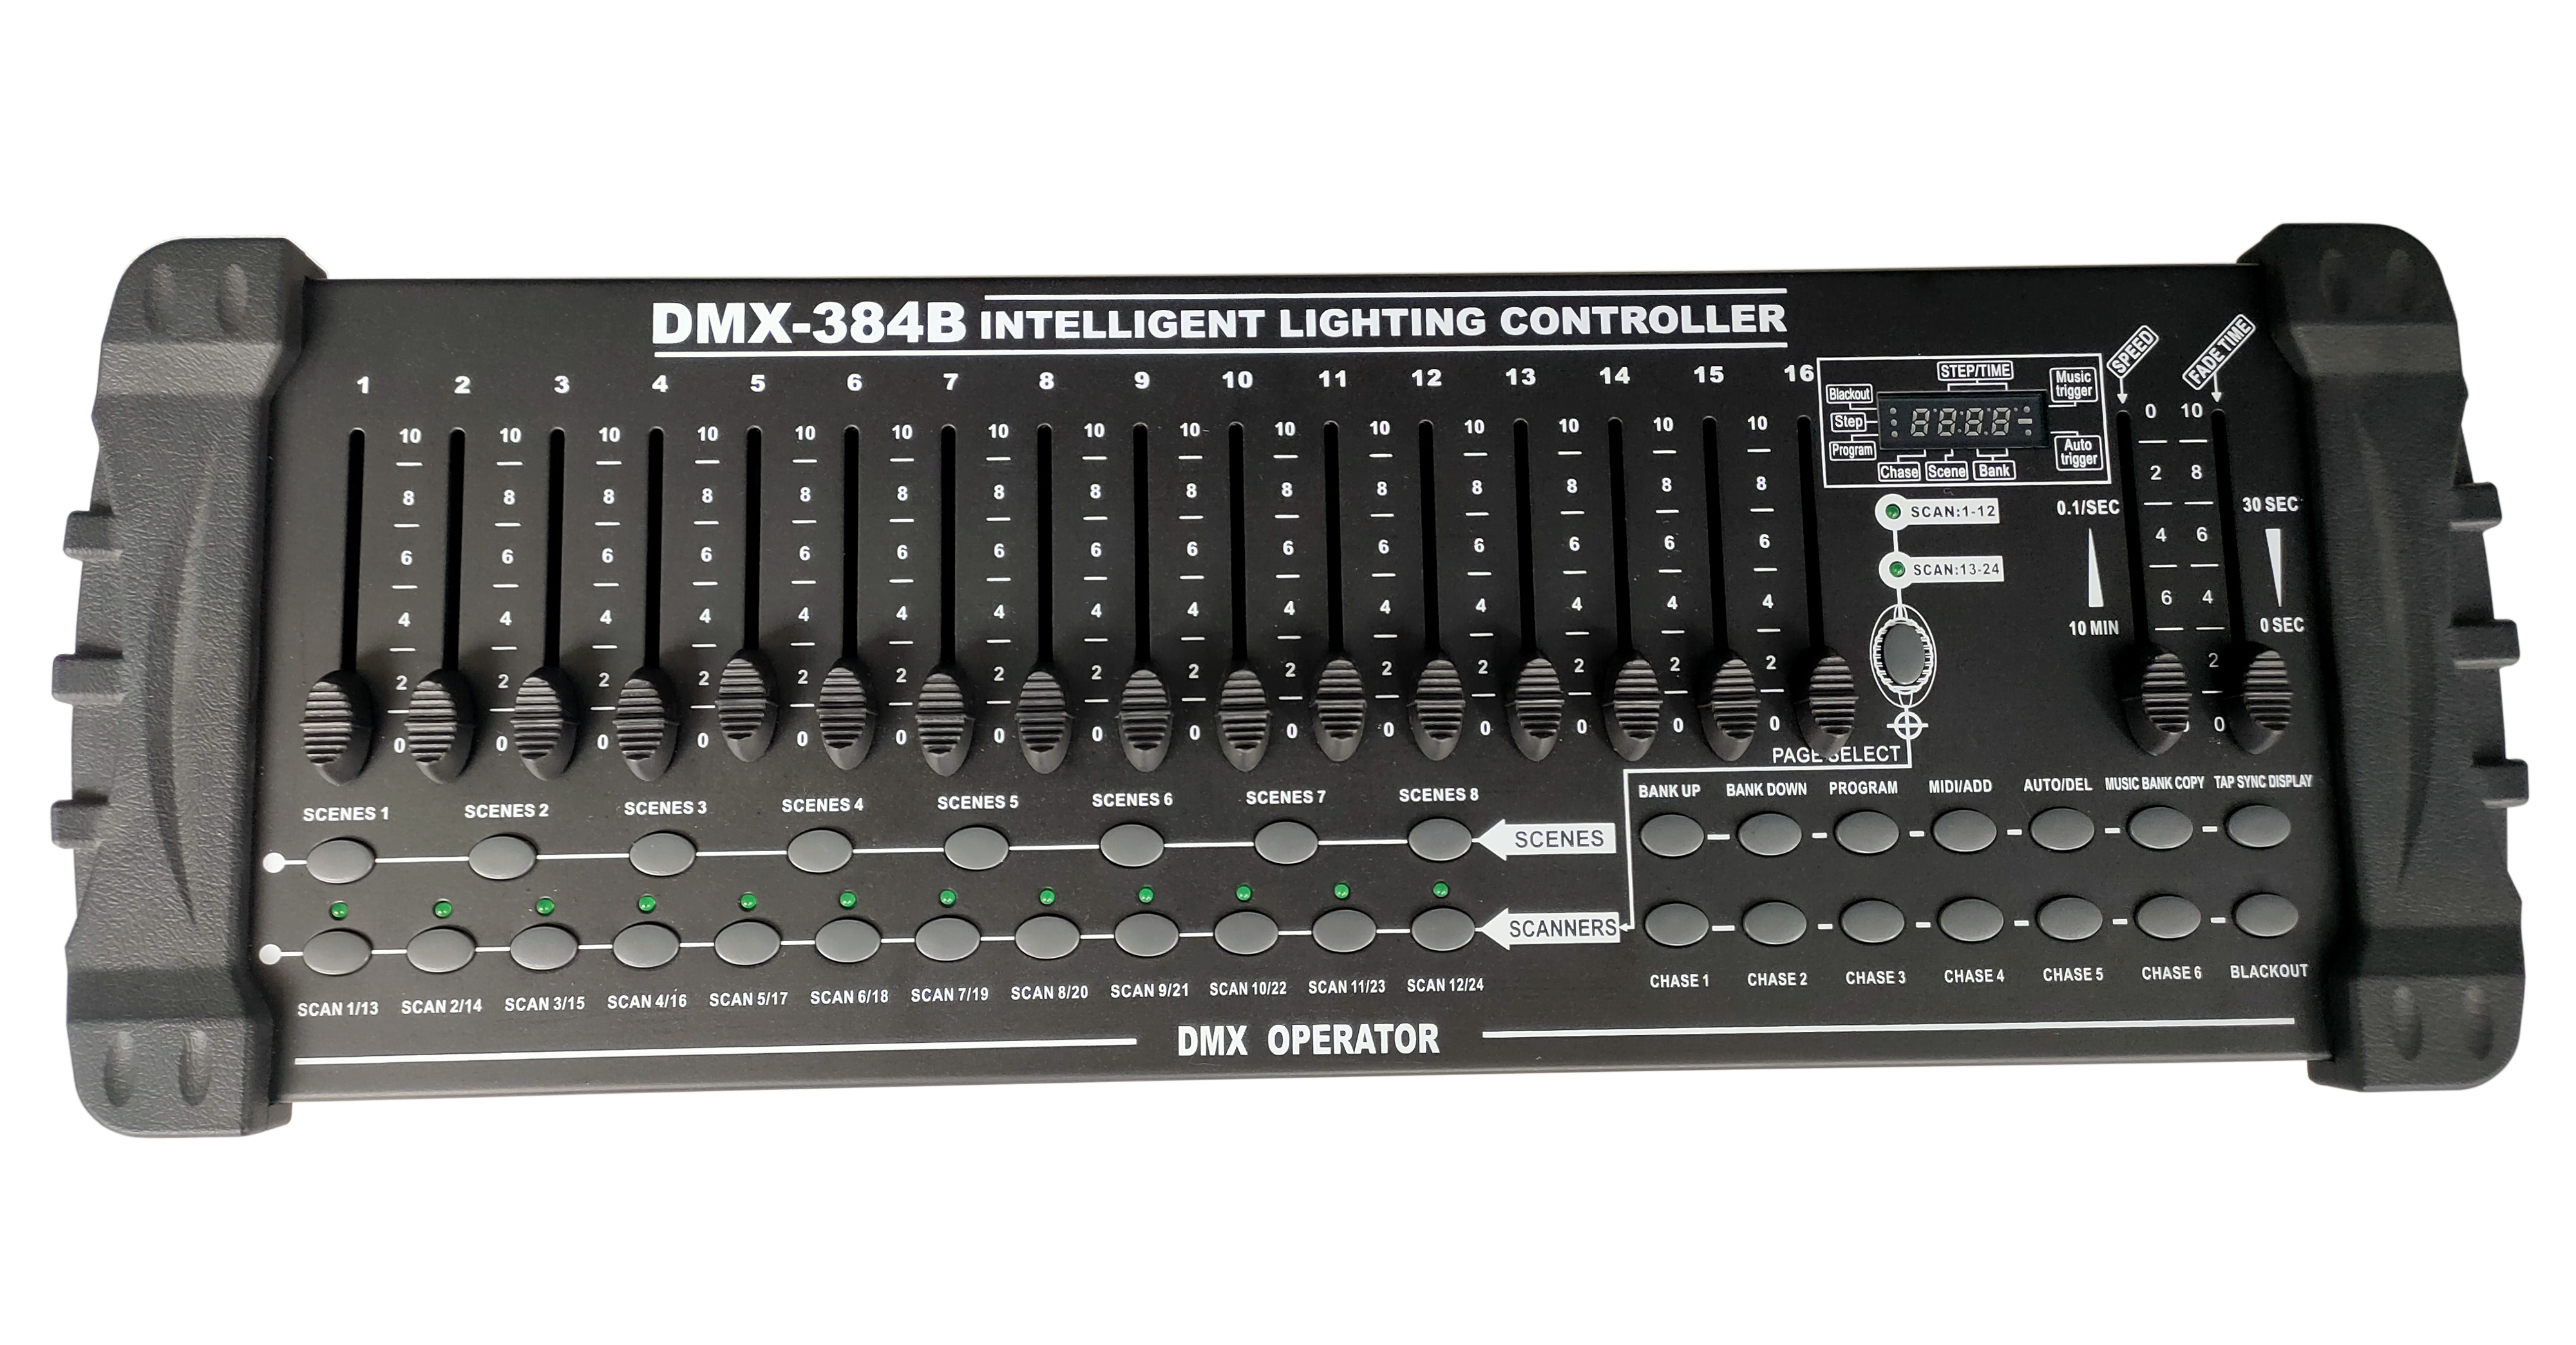 Controlador DMX-512 de 384 canales FD-K384B